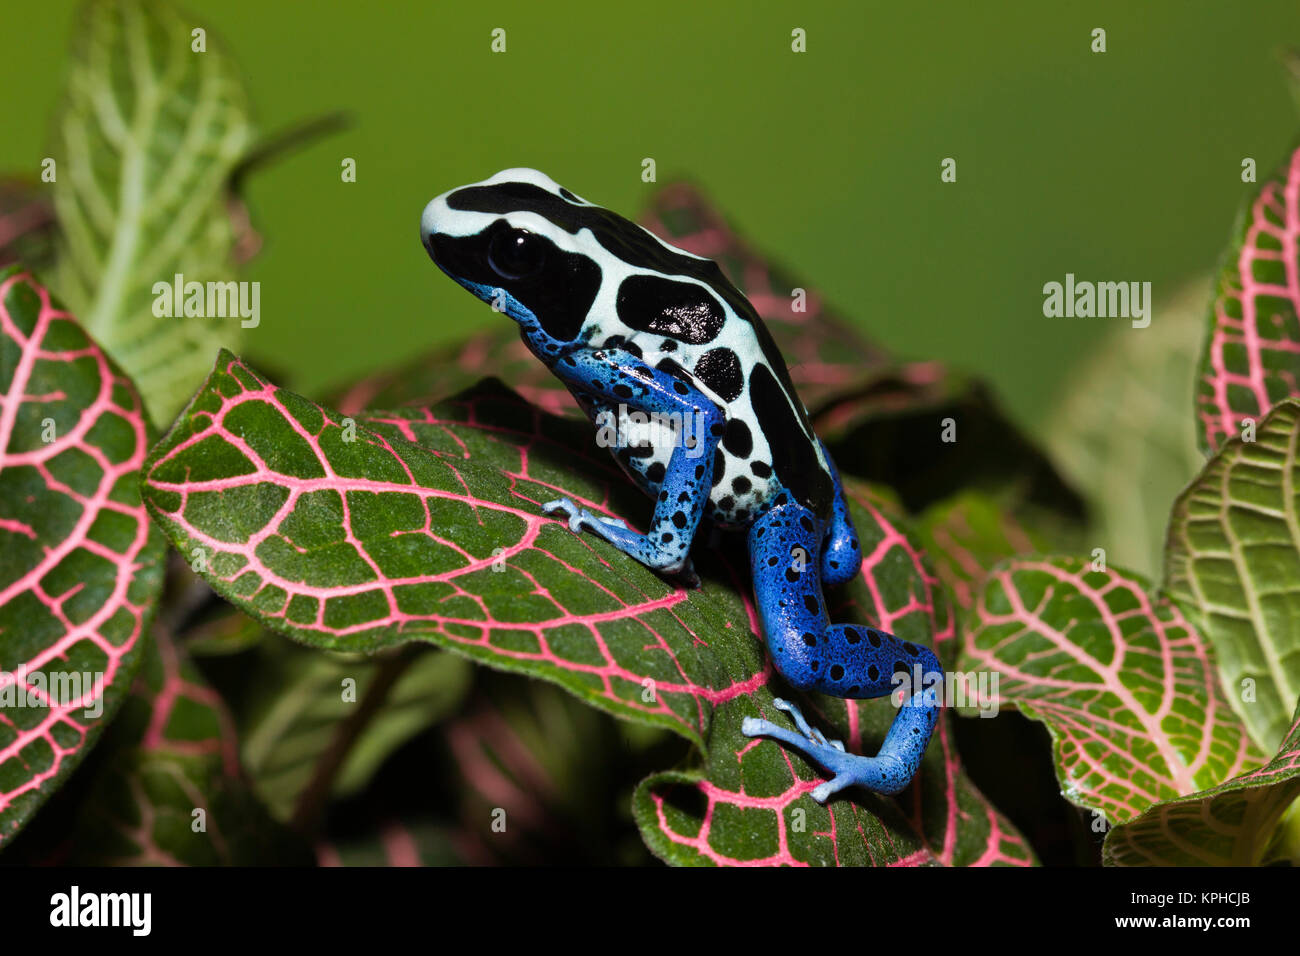 Dyeing Dart Frog (Dendrobates tinctorius oyapok) Stock Photo